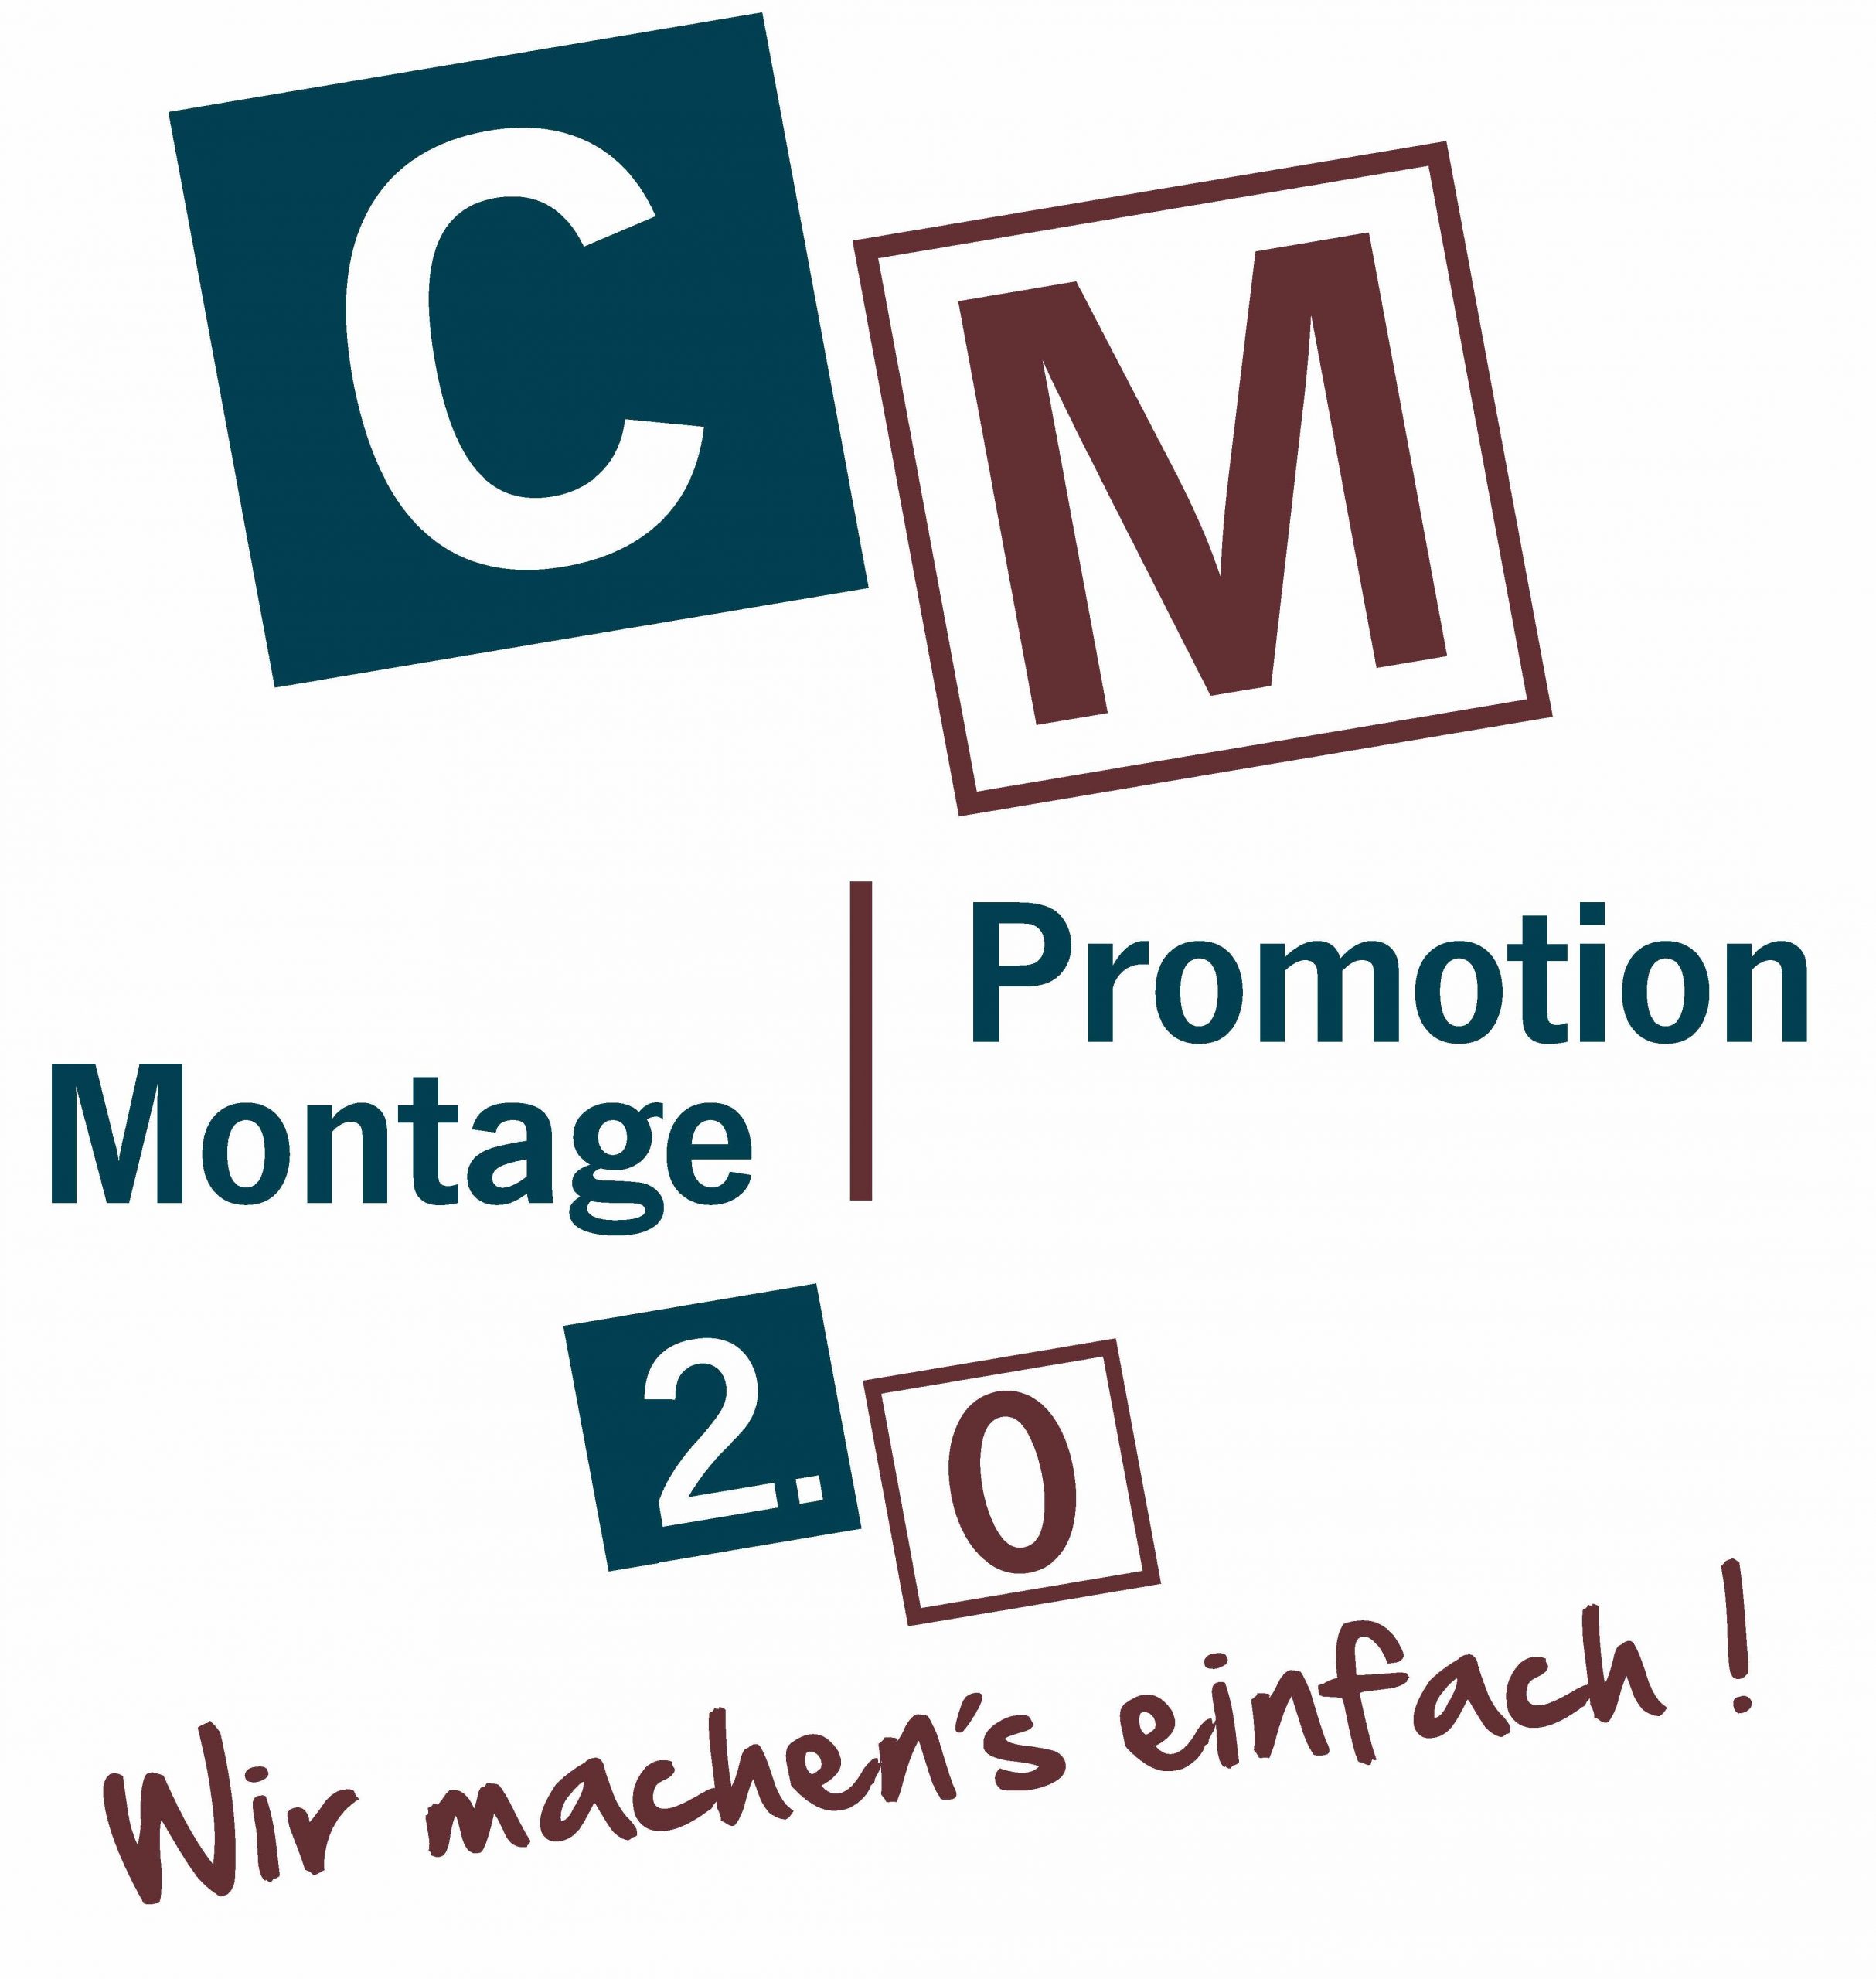 CM Montage Promotion 2.0